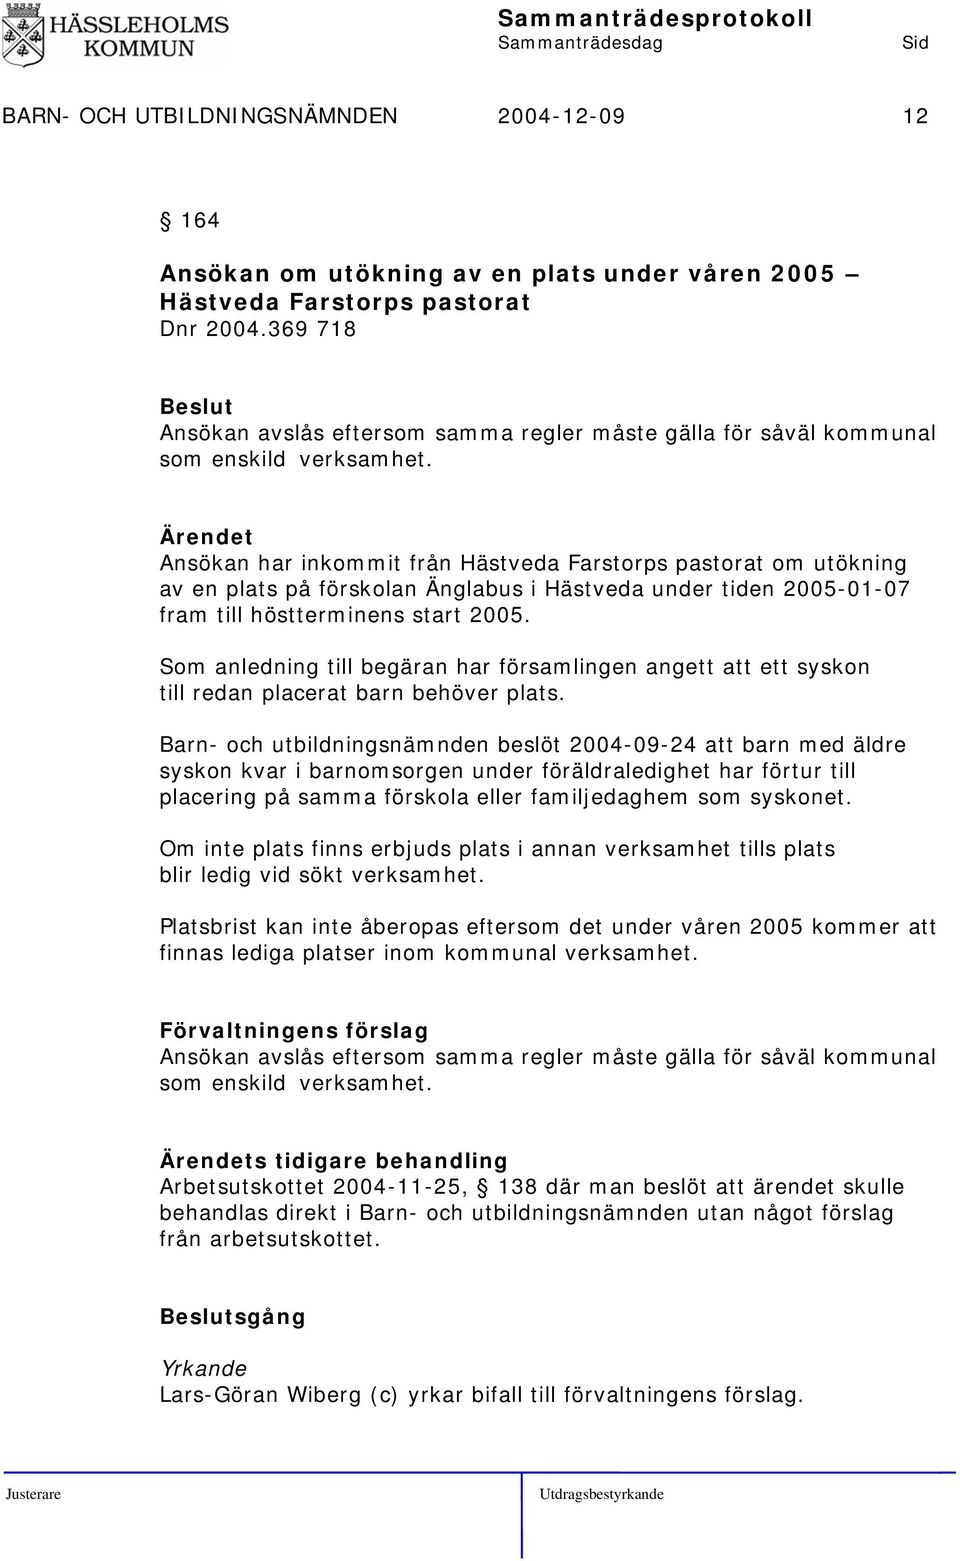 Ansökan har inkommit från Hästveda Farstorps pastorat om utökning av en plats på förskolan Änglabus i Hästveda under tiden 2005-01-07 fram till höstterminens start 2005.